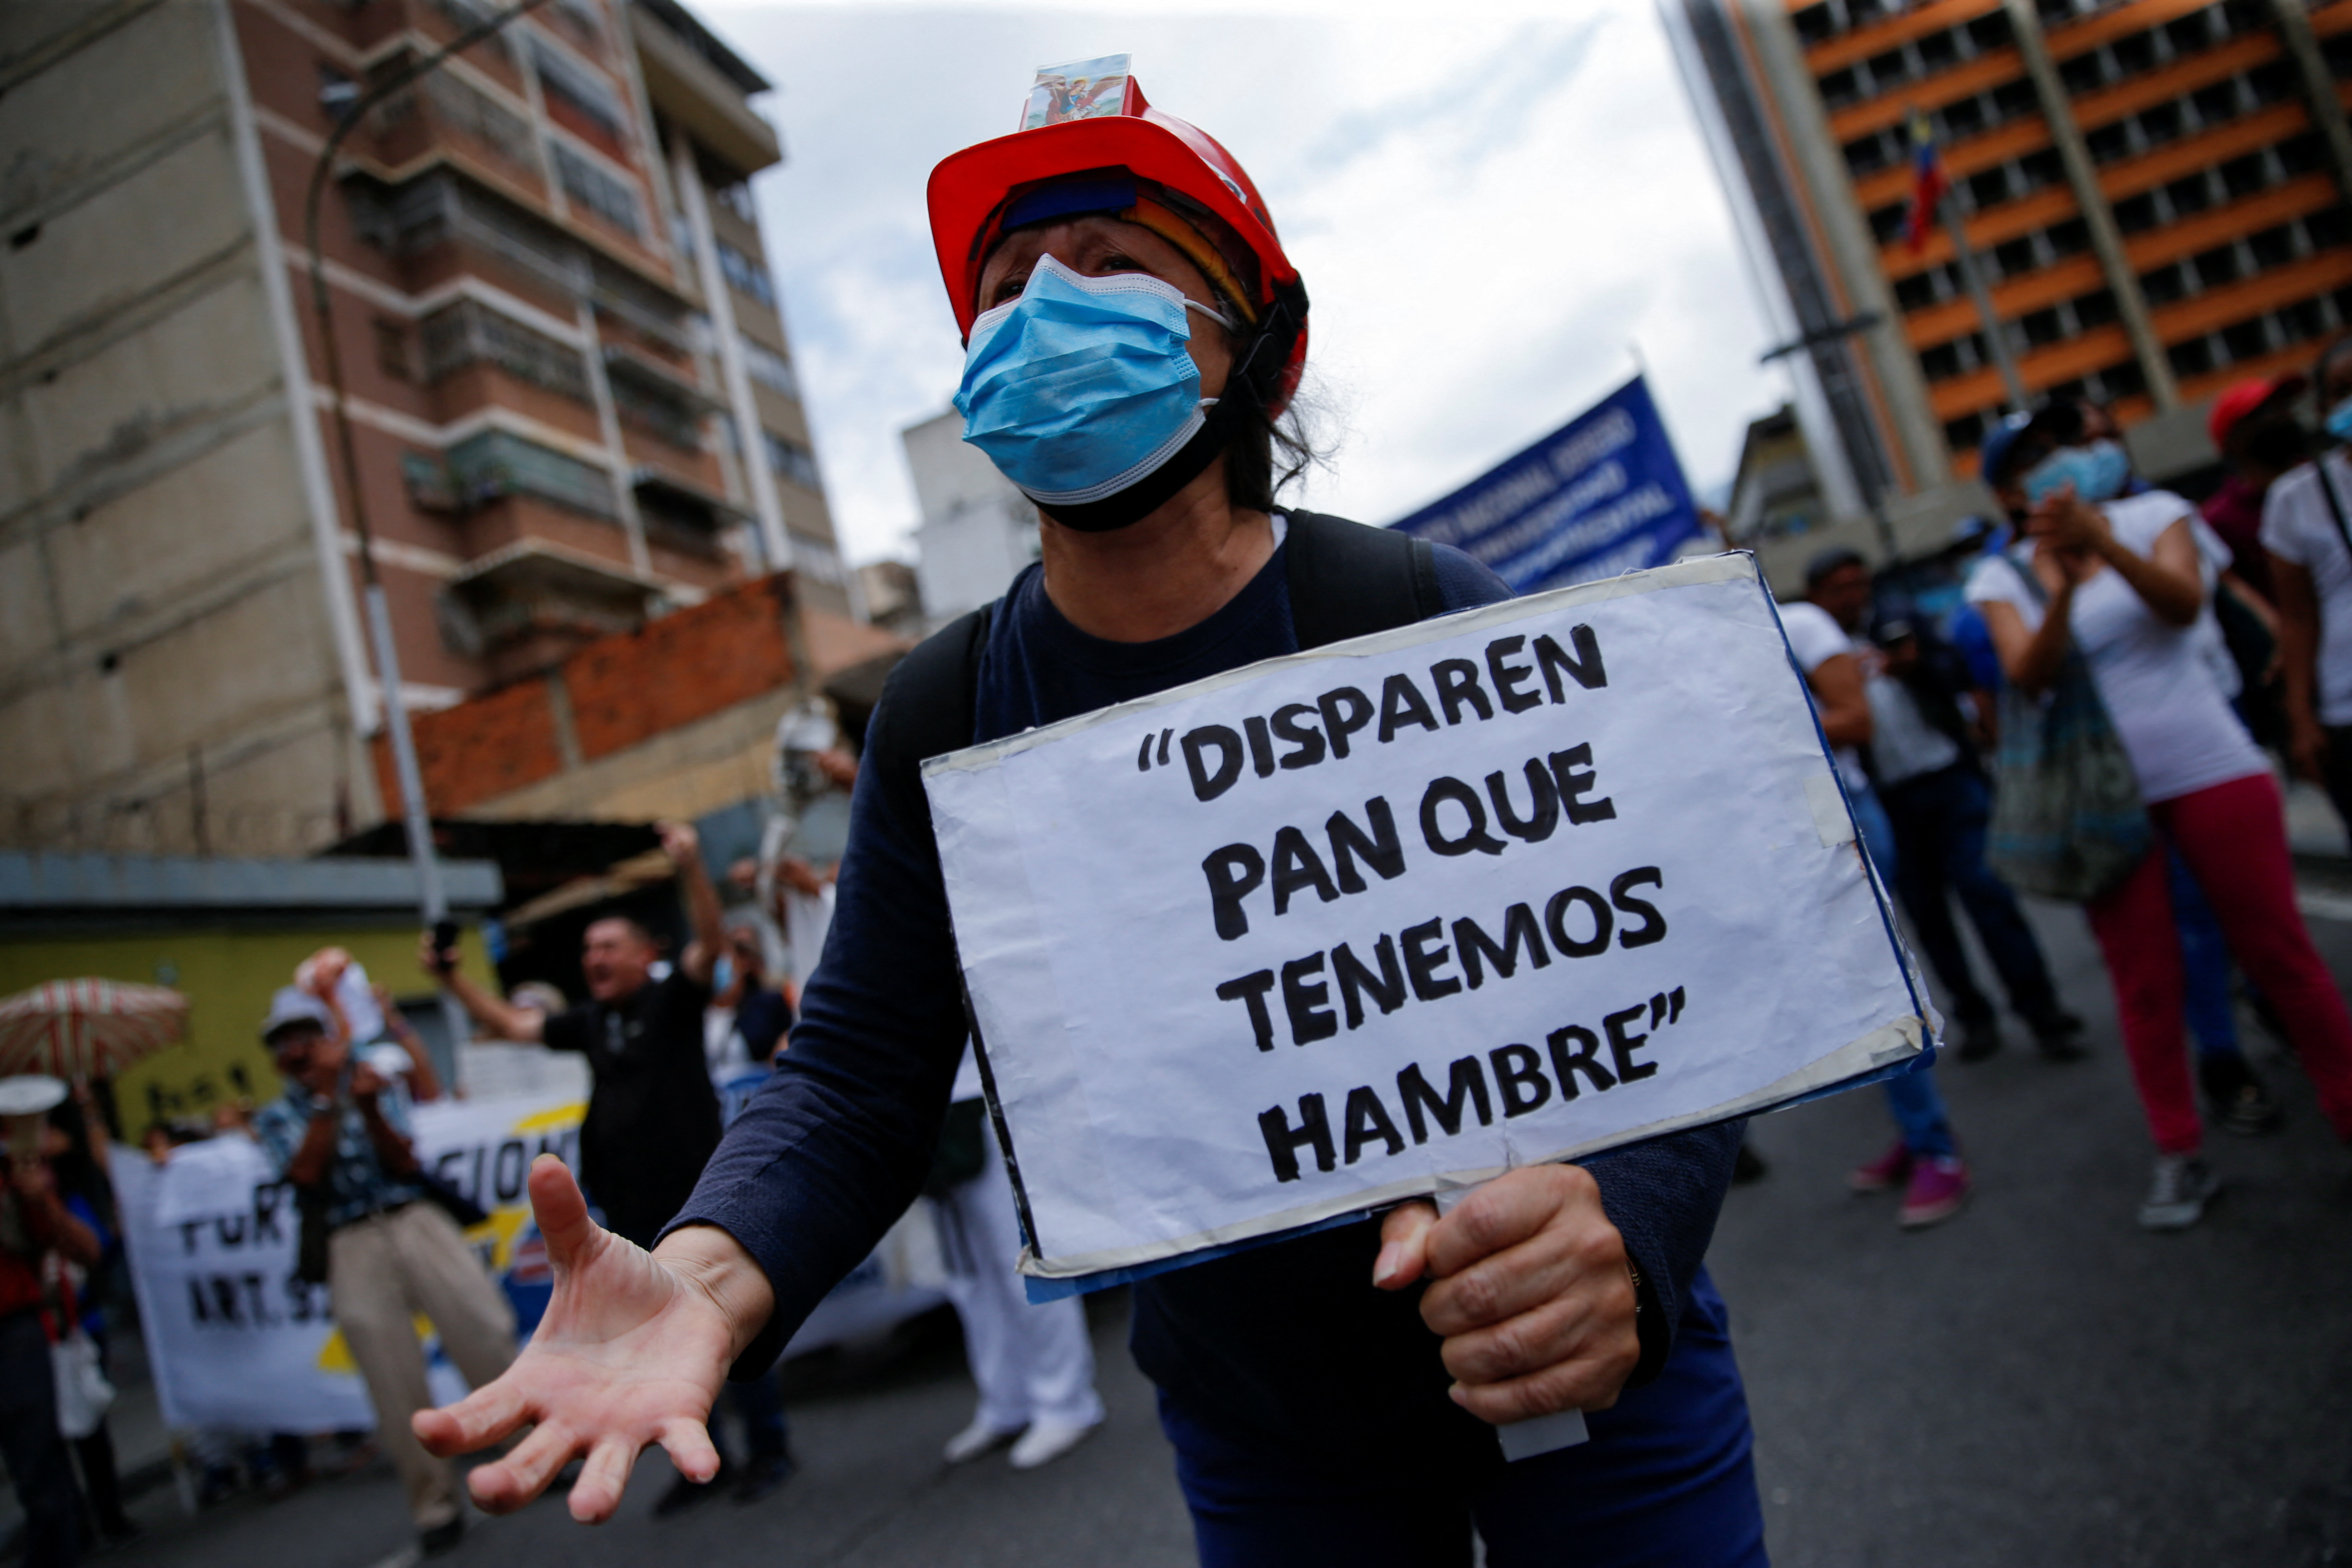 El pasado mes de agosto, cientos de maestros del sector público marcharon  para exigir a la dictadura de Nicolás Maduro salarios justos y el respeto a sus derechos laborales que denuncian fueron vulnerados tras recibir pagos incompletos de beneficios tales como el bono vacacional.